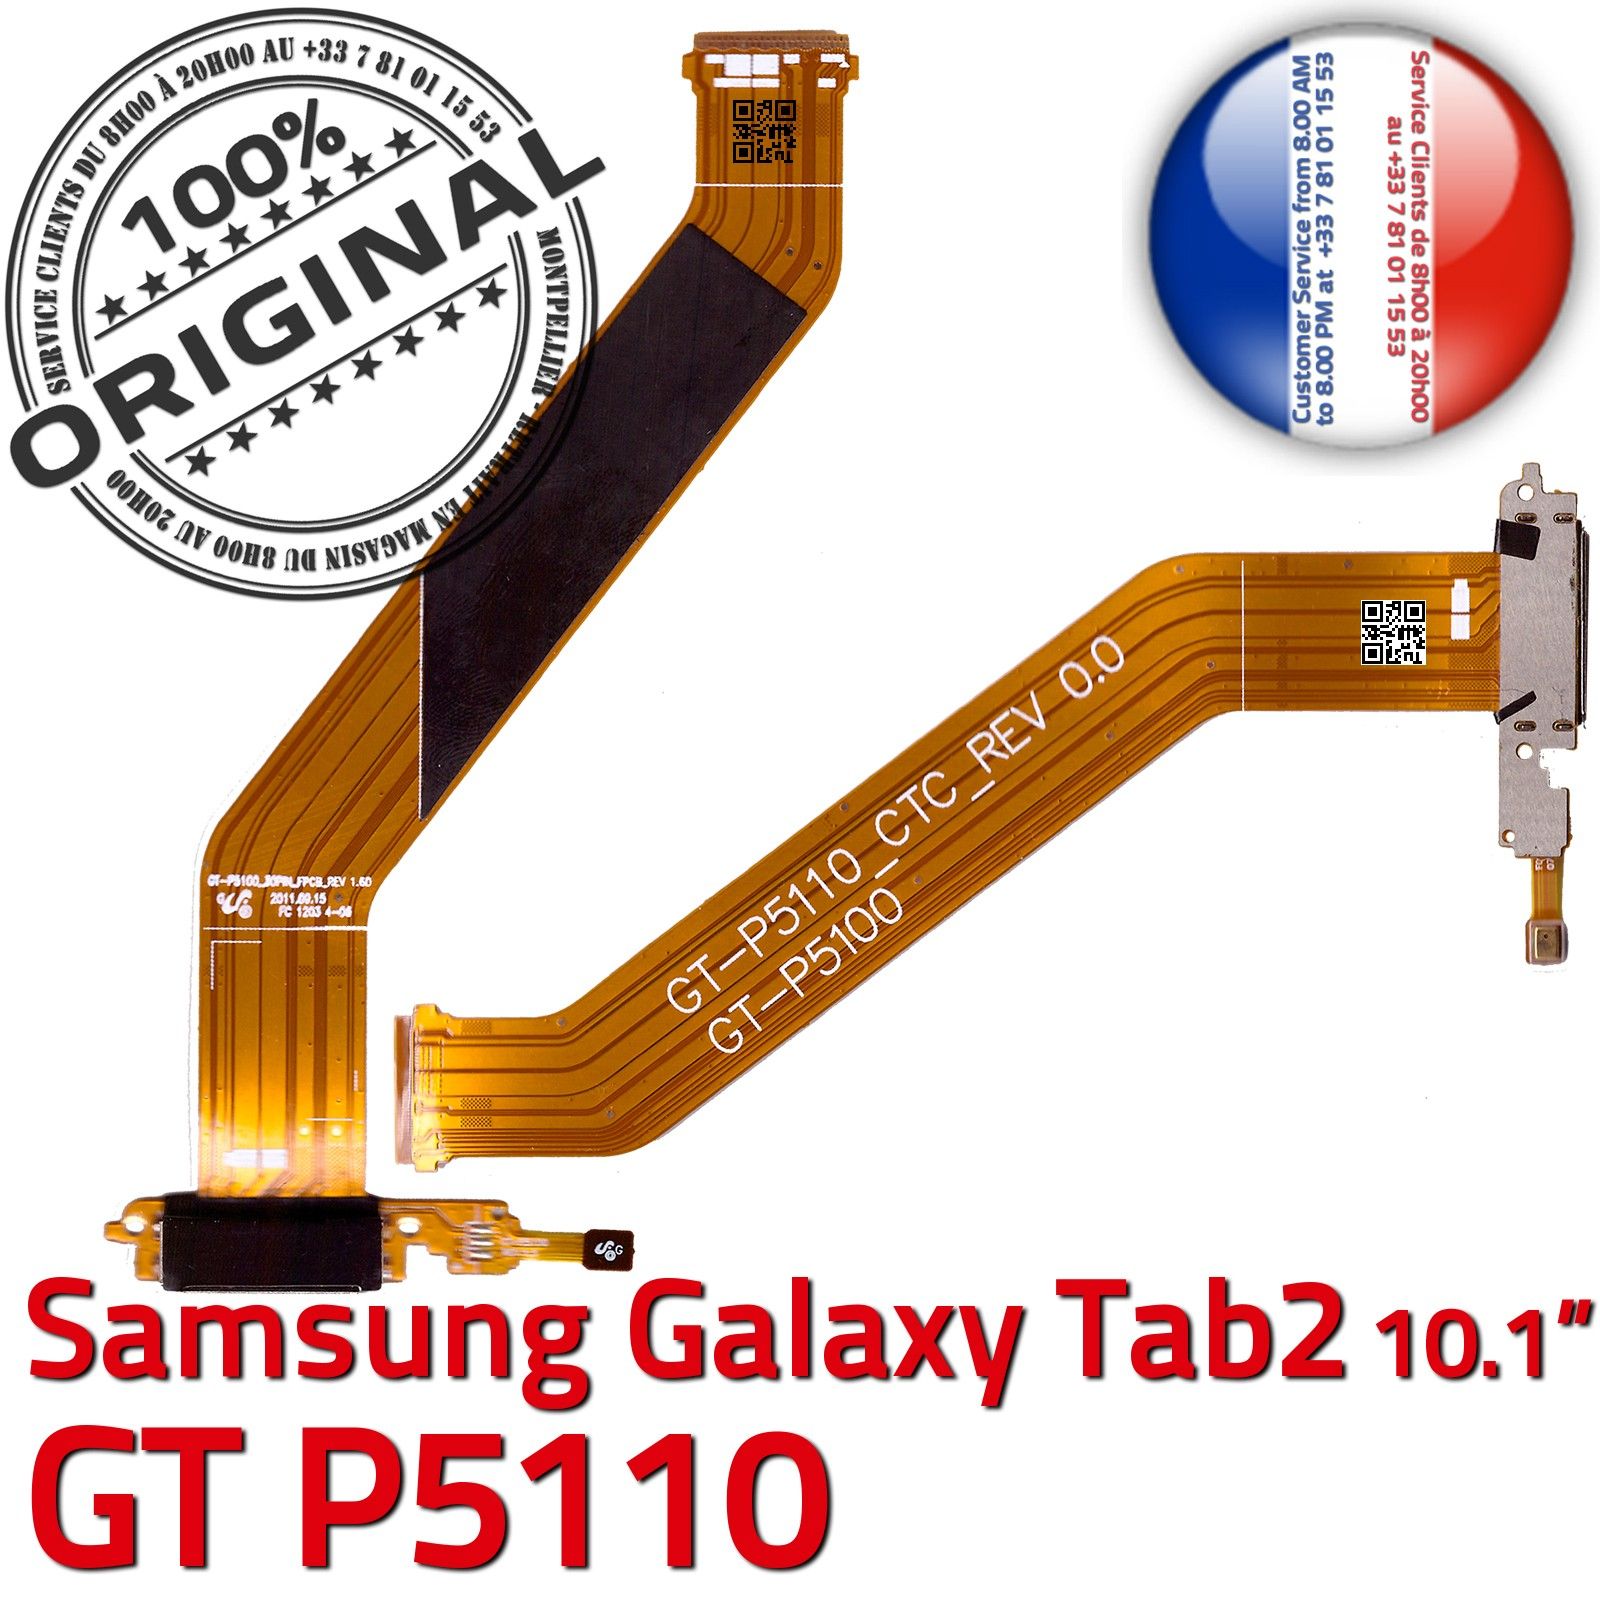 ORIGINAL Samsung Galaxy TAB2 GT-P5110 Connecteur de Charge Chargeur MicroUSB Nappe OFFICIELLE Qualité Contacts Dorés Réparation